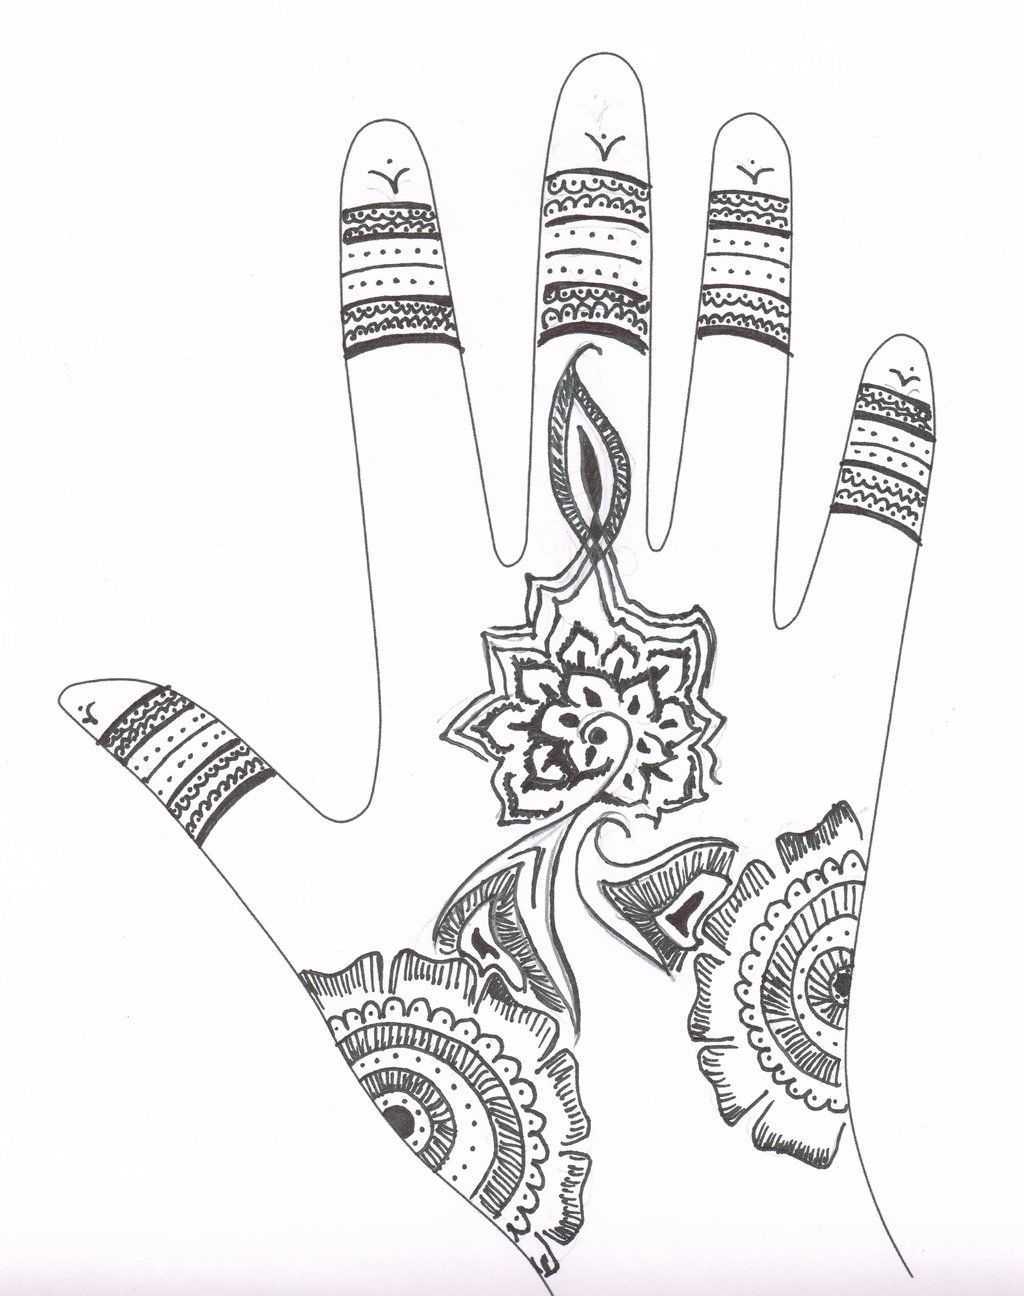 Как научиться рисовать мехенди на руке и ноге: фото-идеи, эскизы, значения красивых узоров мехенди и видео-уроки росписи руки и ноги для начинающих | qulady